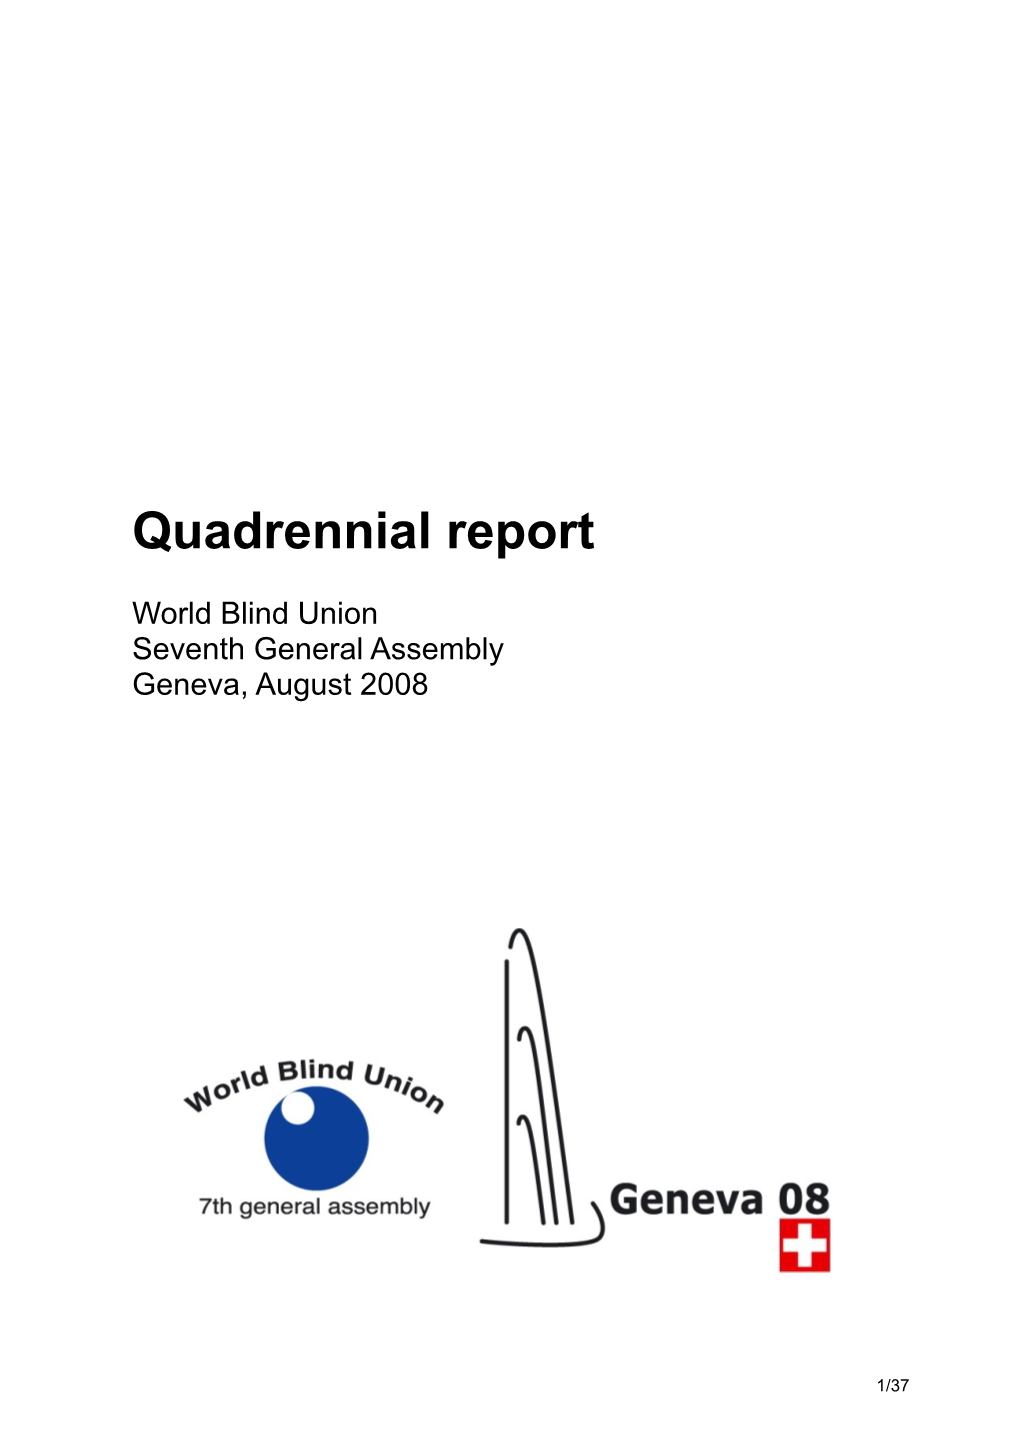 Quadrennial Report